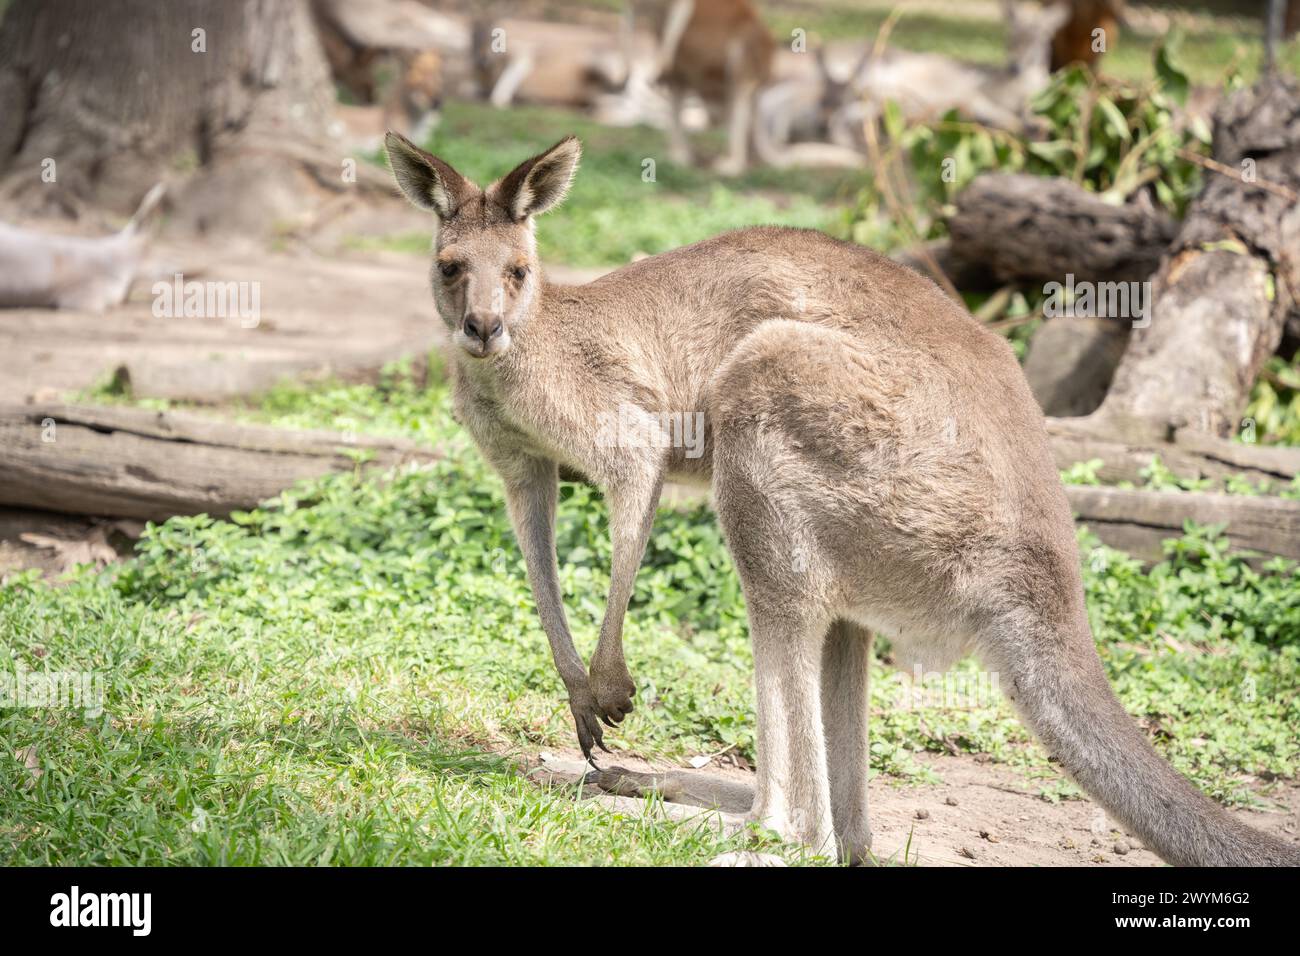 Canguro in piedi che controlla il suo ambiente, la fauna selvatica australiana. Foto Stock